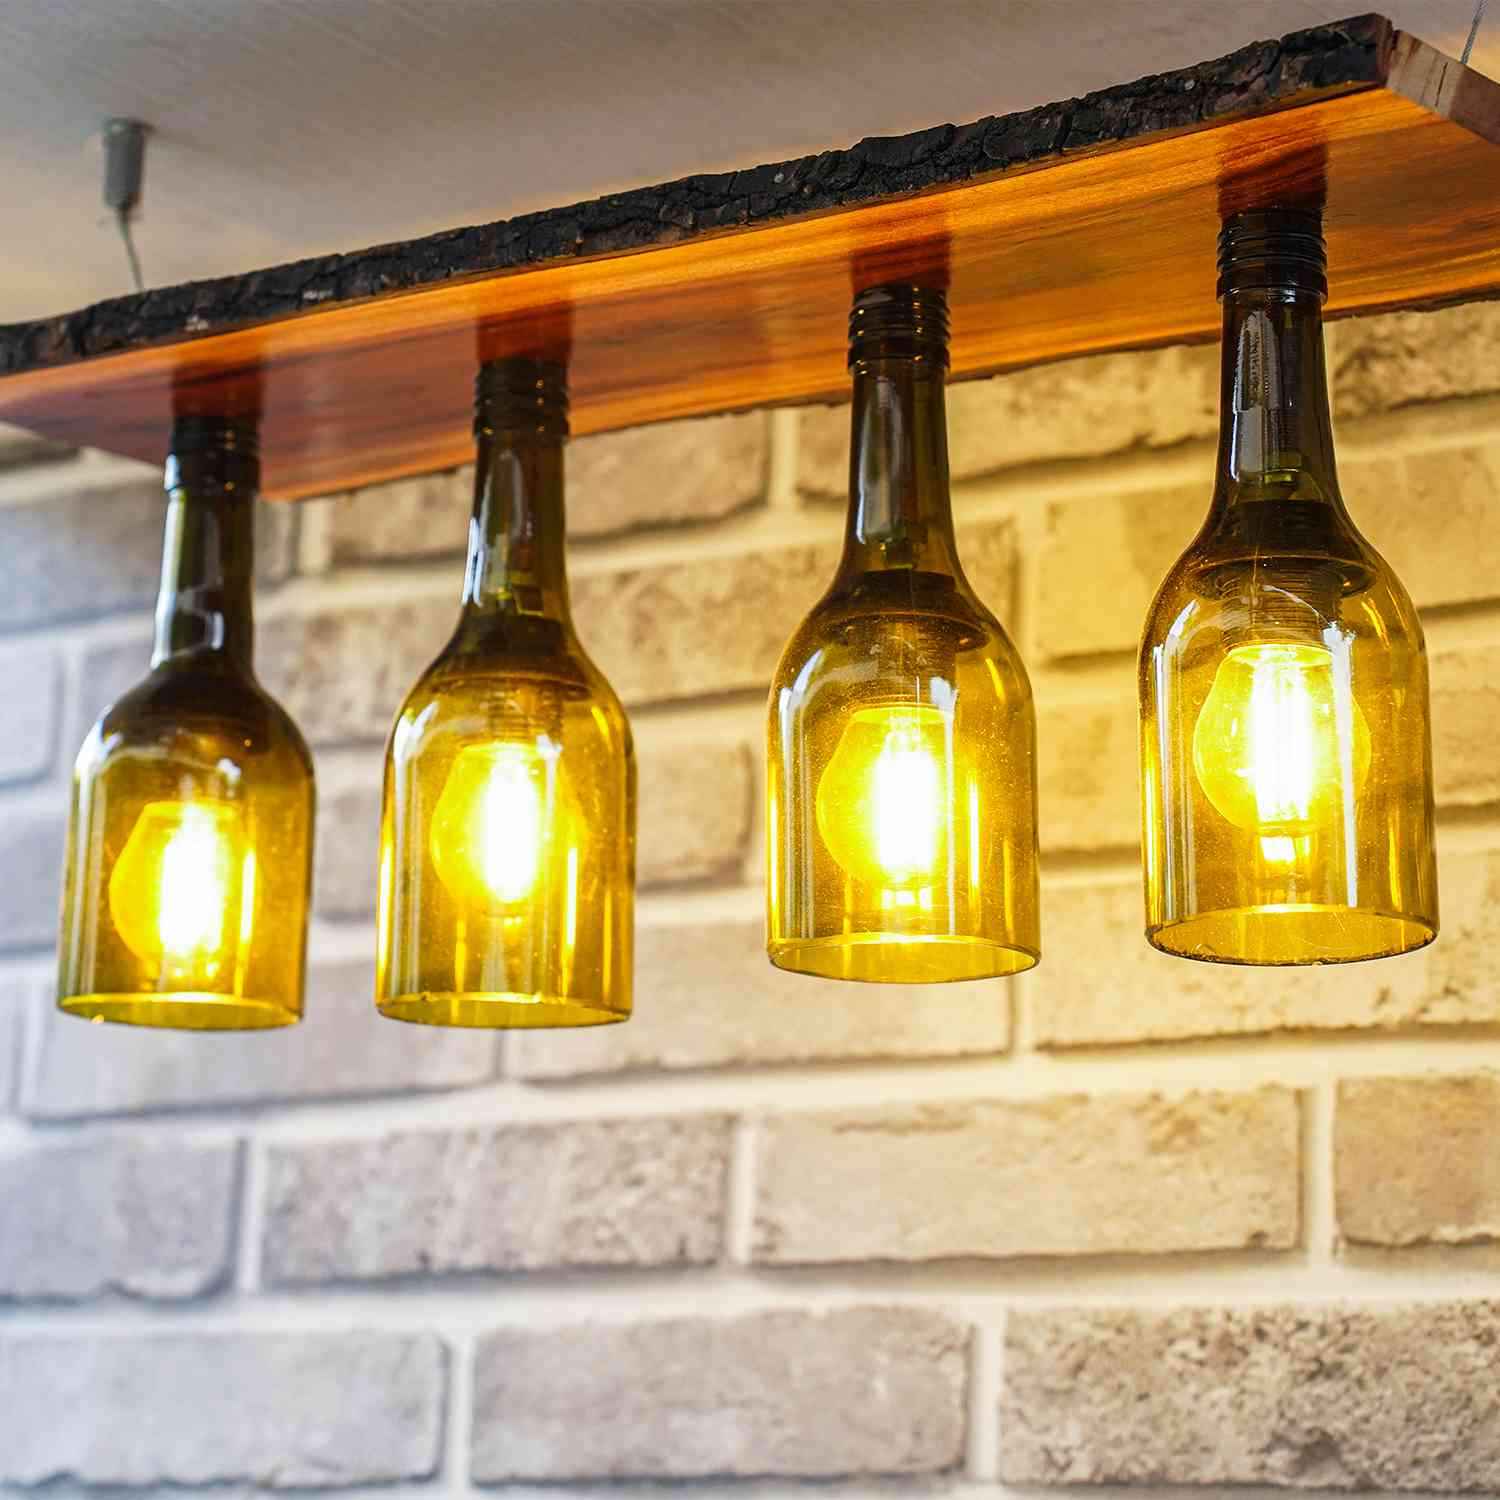 Multi Bulb Ceiling Lamp (Recycled Bottles) - 4 Bottles